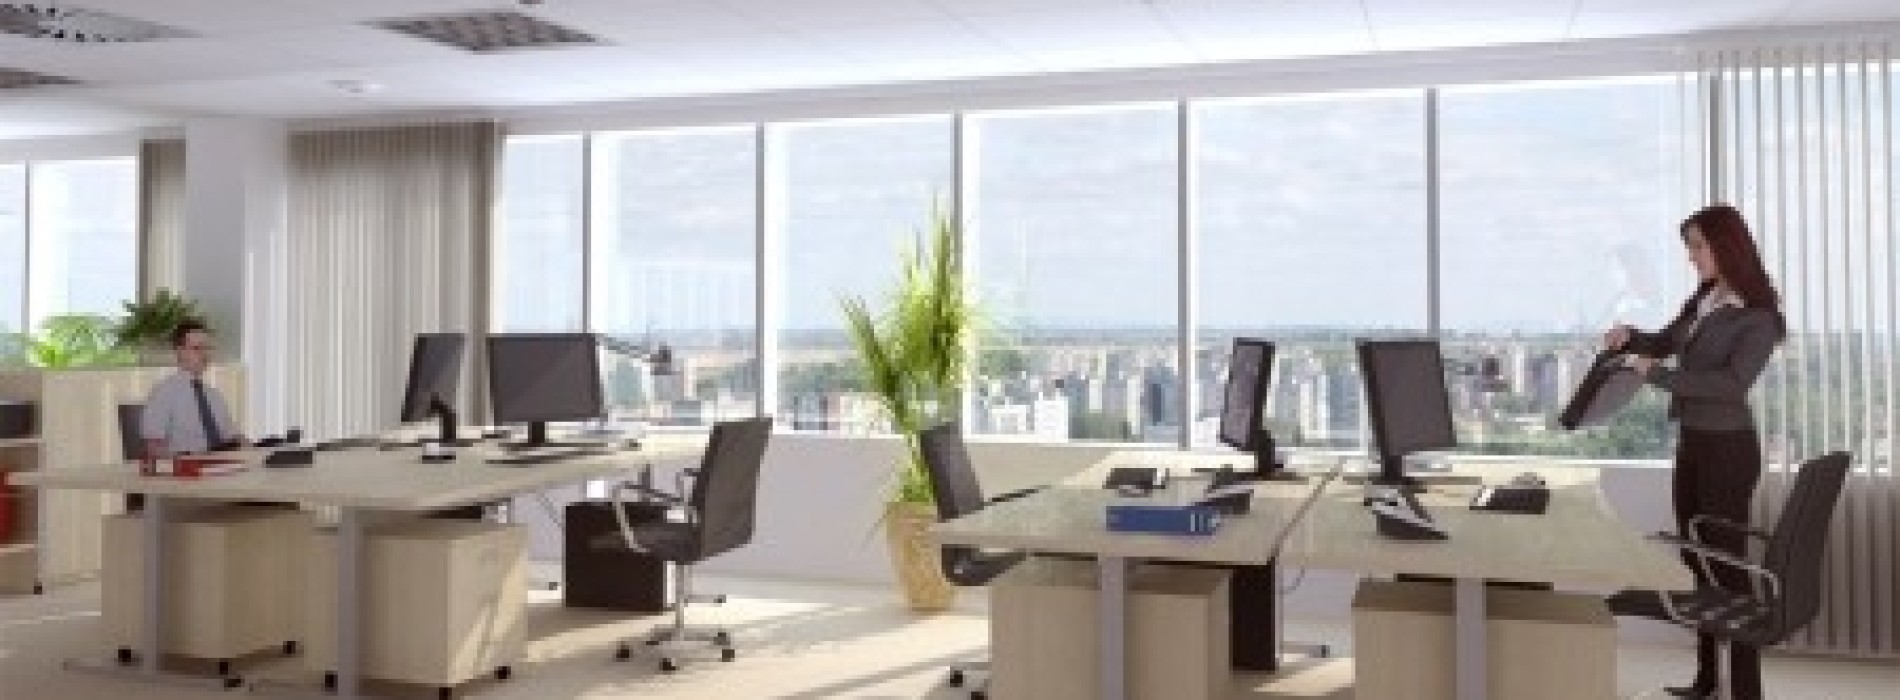 Przyszłość przestrzeni biurowych: elastyczność i zdalna praca